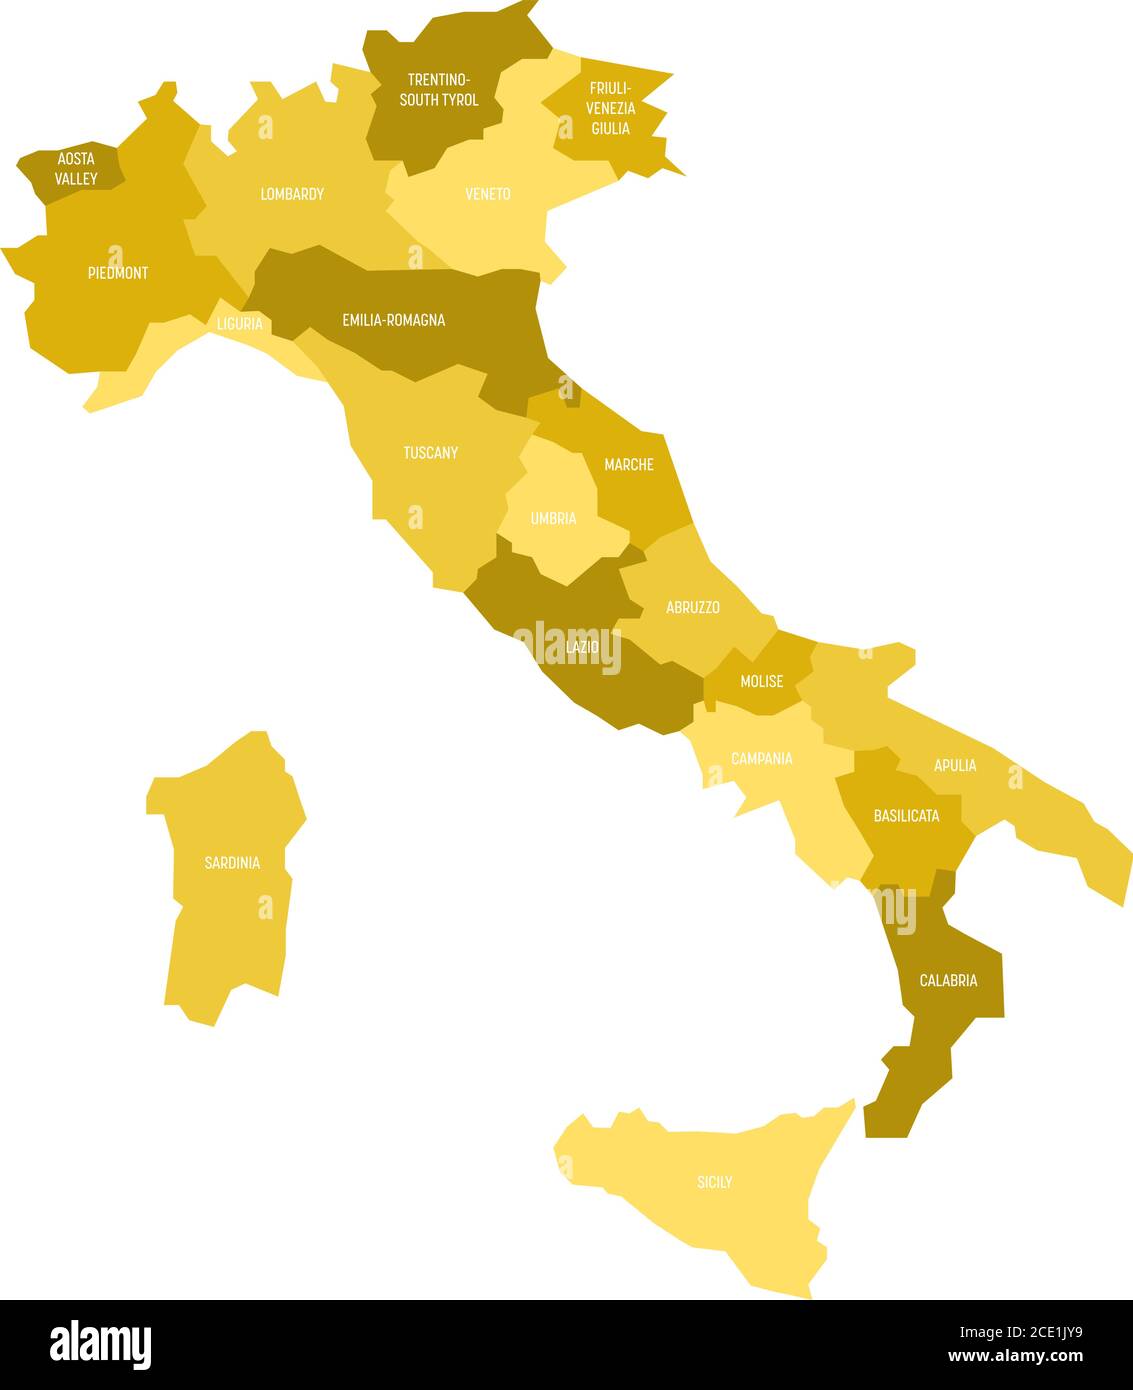 Mappa dell'Italia divisa in 20 regioni amministrative in quattro tonalità di giallo. Etichette bianche. Semplice illustrazione vettoriale piatta. Illustrazione Vettoriale